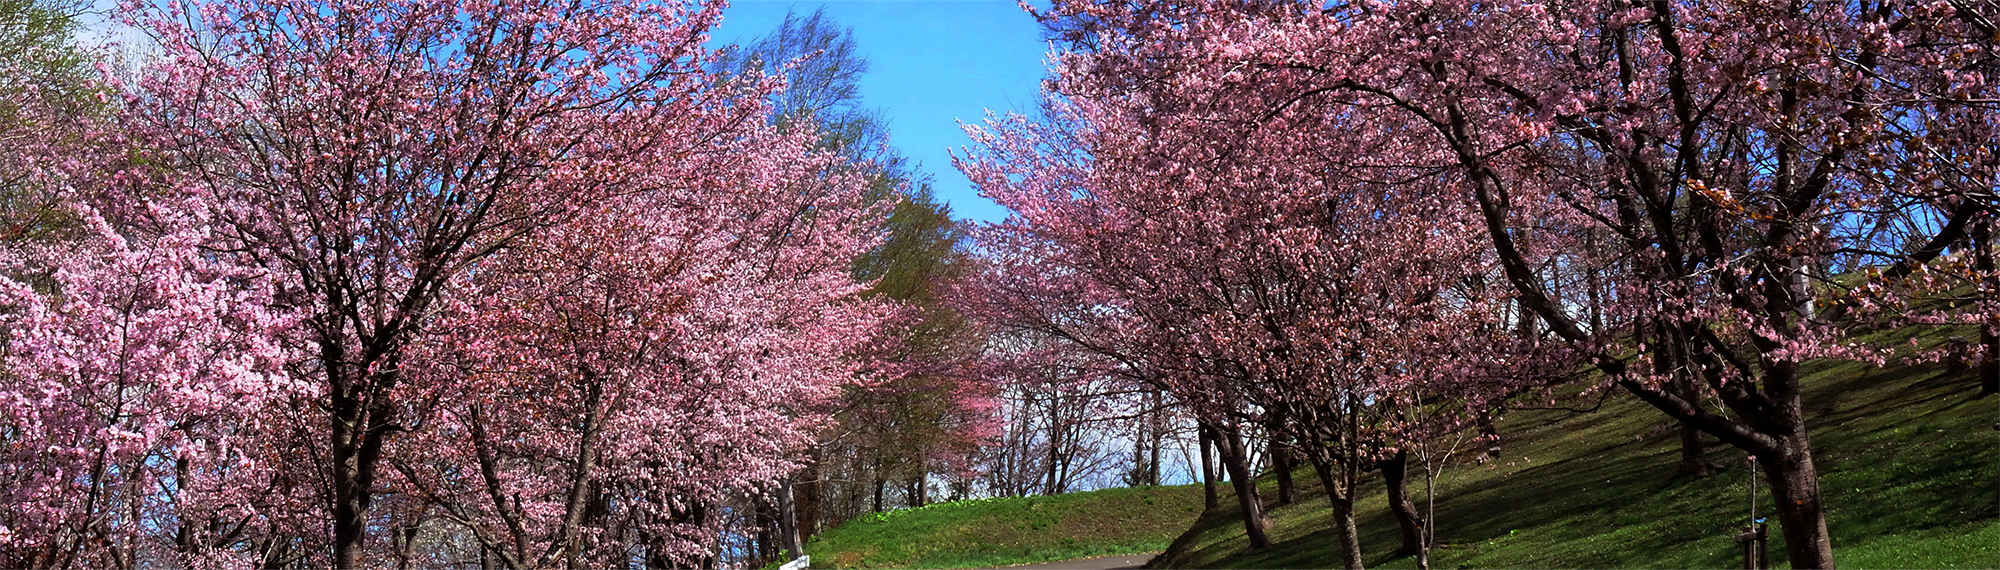 ふらり出かける、桜の丘 旭ヶ丘公園